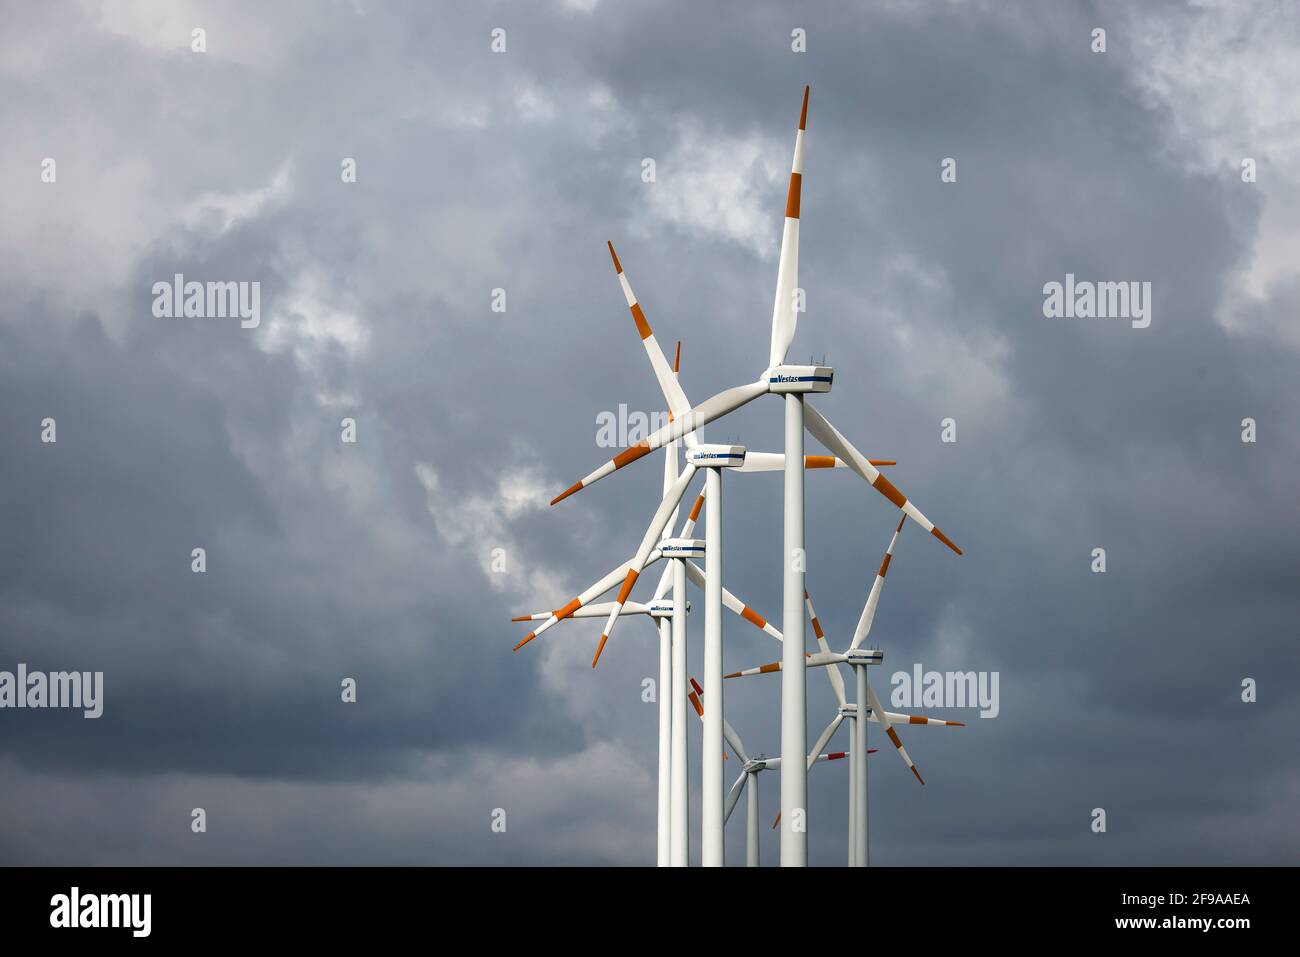 BEDBURG, Renania Settentrionale-Vestfalia, Germania - centrali eoliche, turbine eoliche Vestas di fronte a un cielo nuvoloso scuro. Foto Stock